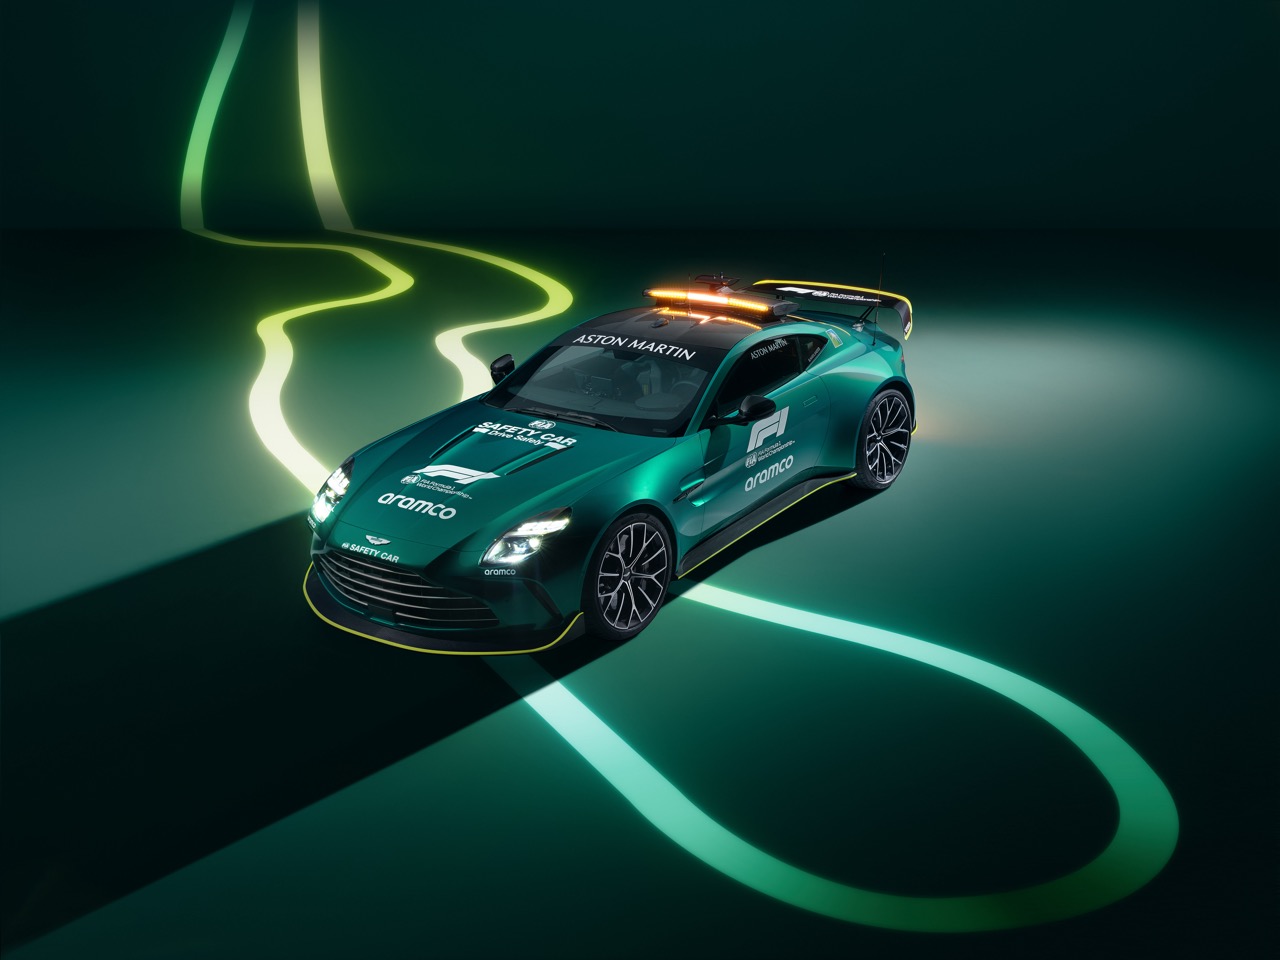 Aston Martin Vantage trở thành xe an toàn chính thức FIA trong F1